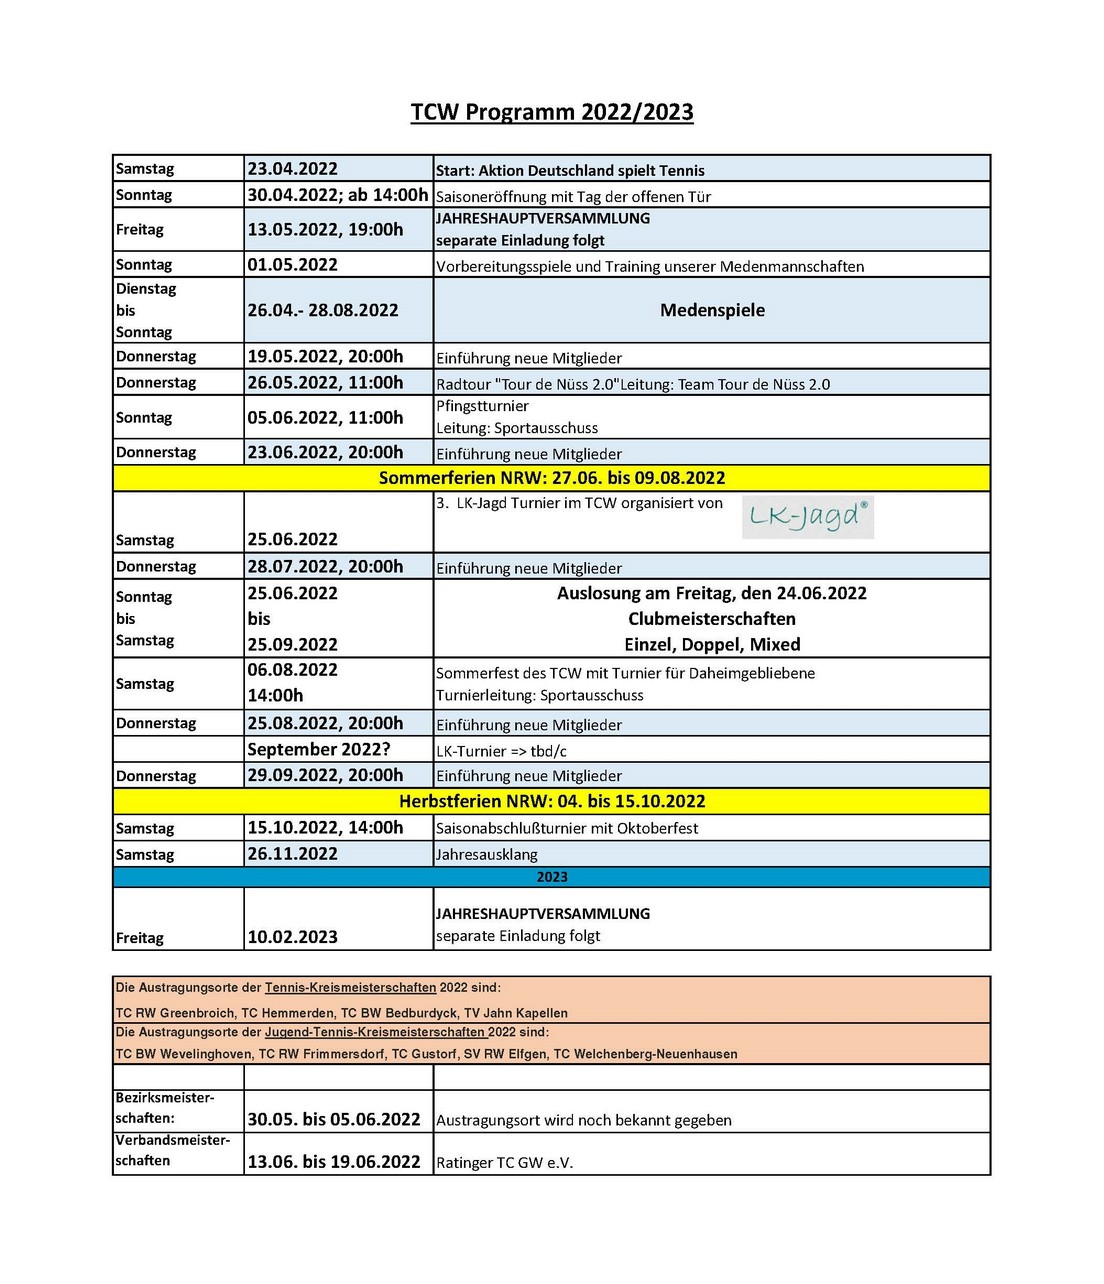 Veranstaltungen und Termin im TCW 2022/2023